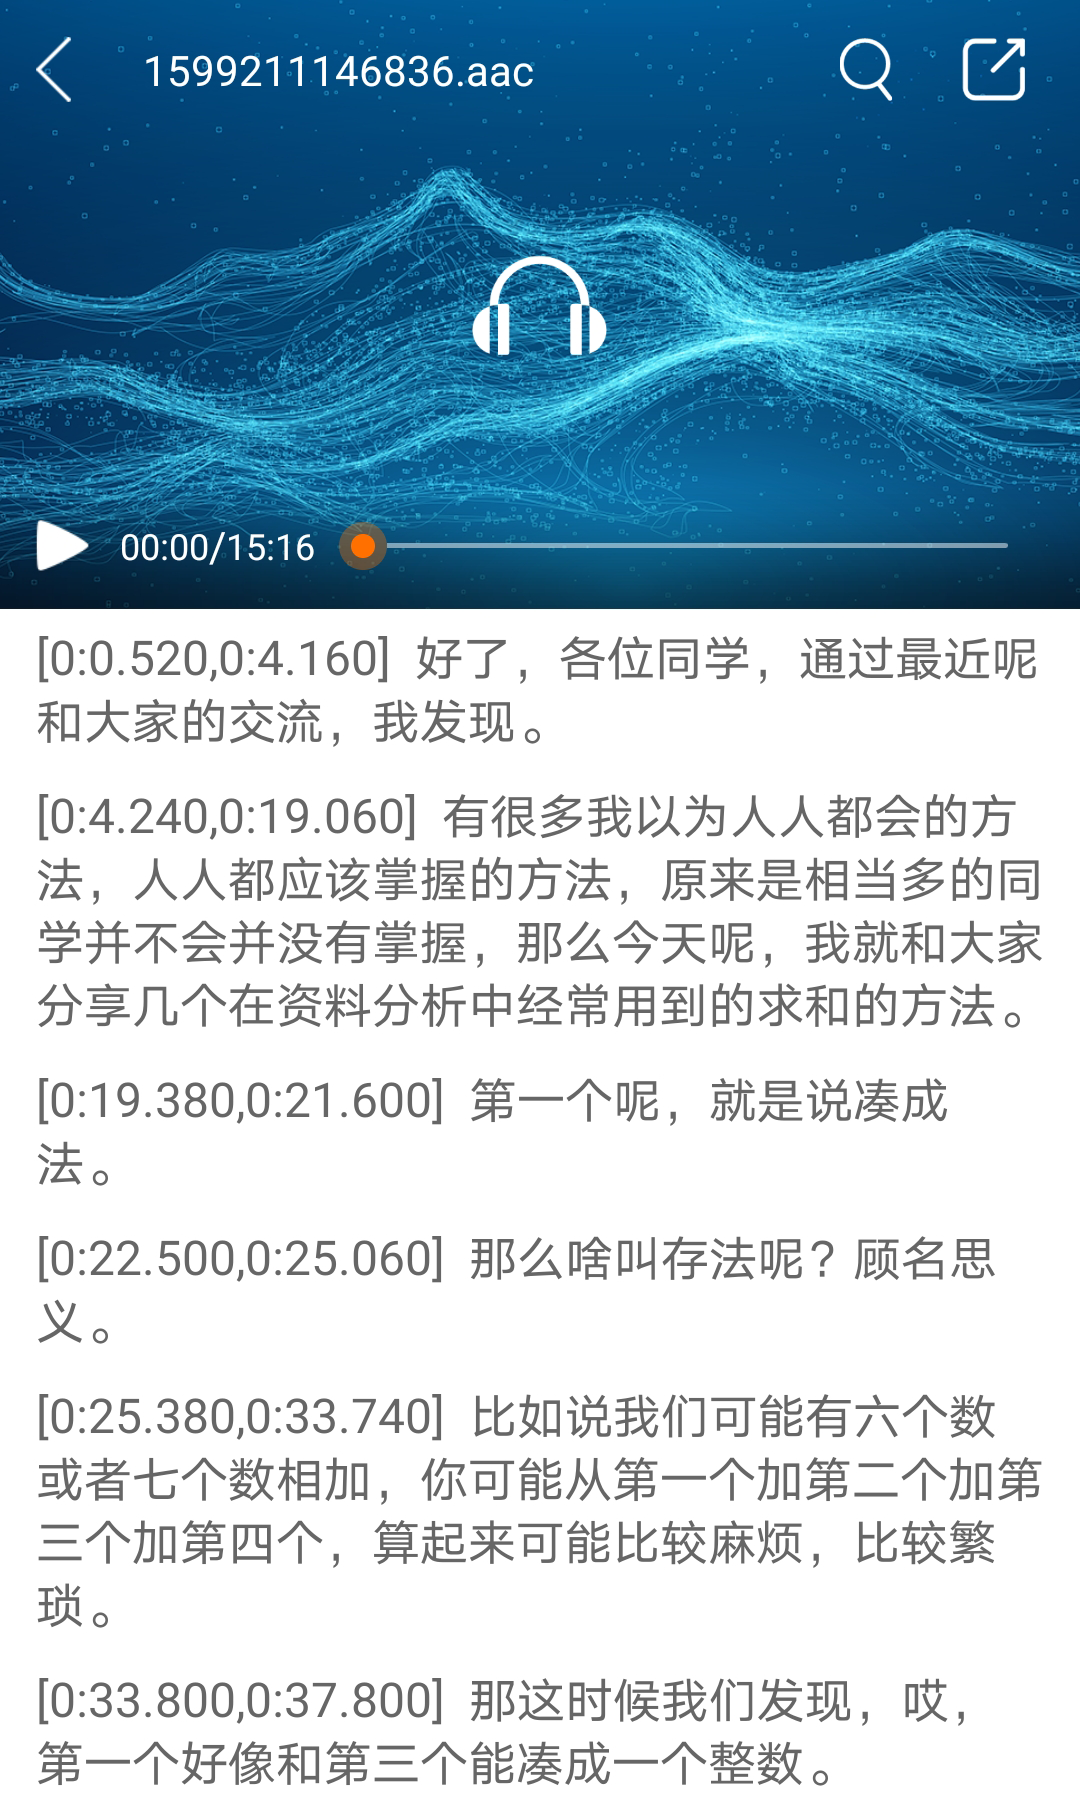 手机照片恢复下载安卓最新版_手机app官方版免费安装下载_豌豆荚